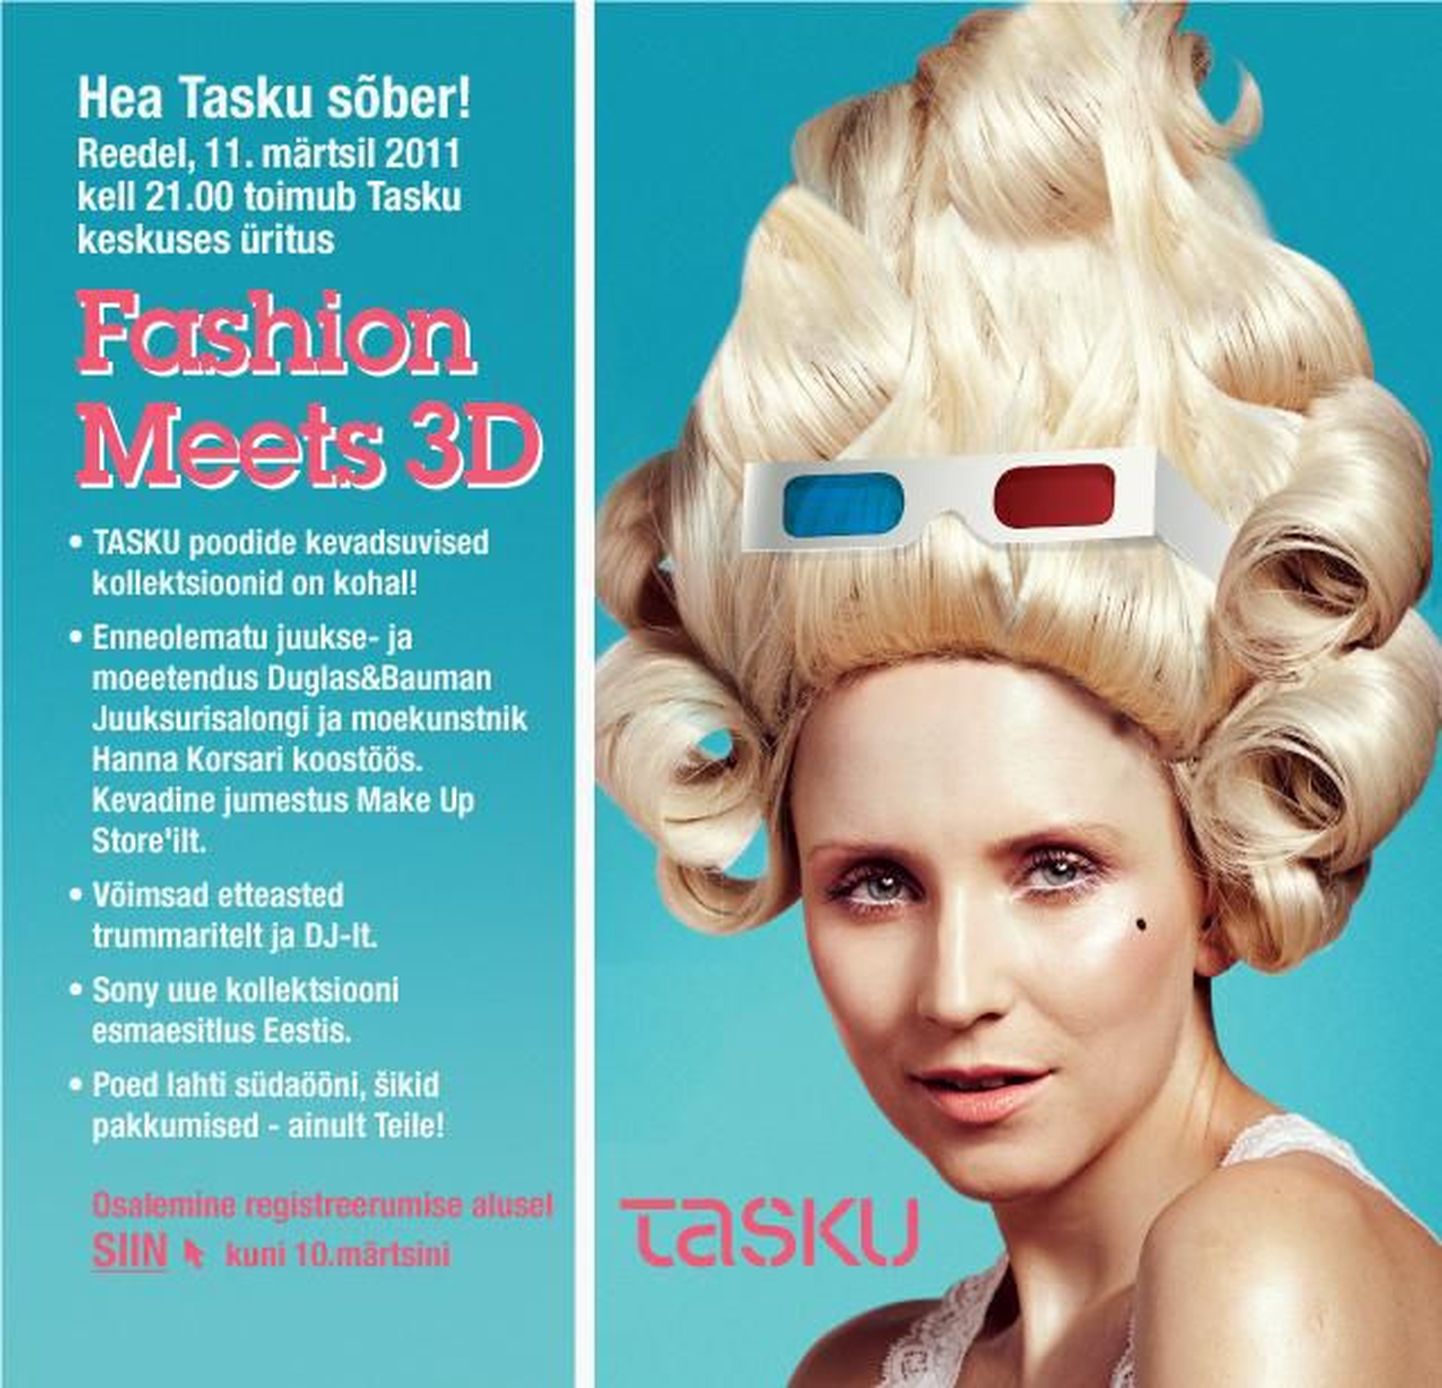 Fashion meets 3D – Tasku kaubanduskeskus annab kevadmoele uue mõõtme!